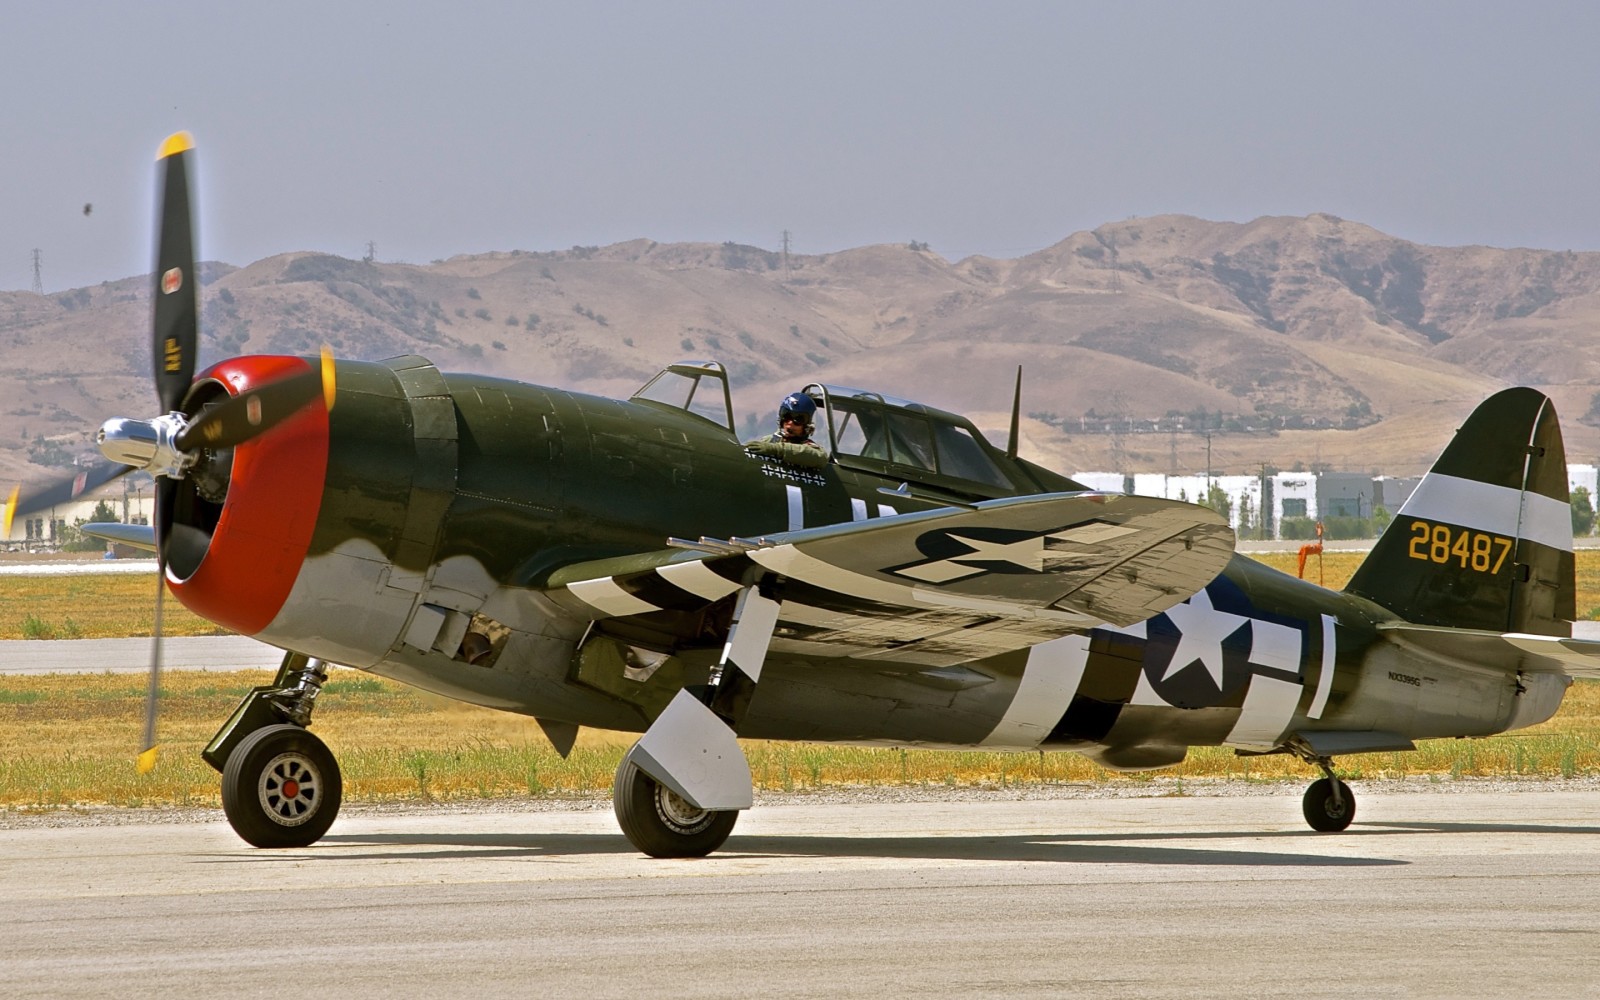 ย้อนยุค, สายฟ้า, P-47, เครื่องบินขับไล่ทิ้งระเบิด, สาธารณรัฐ